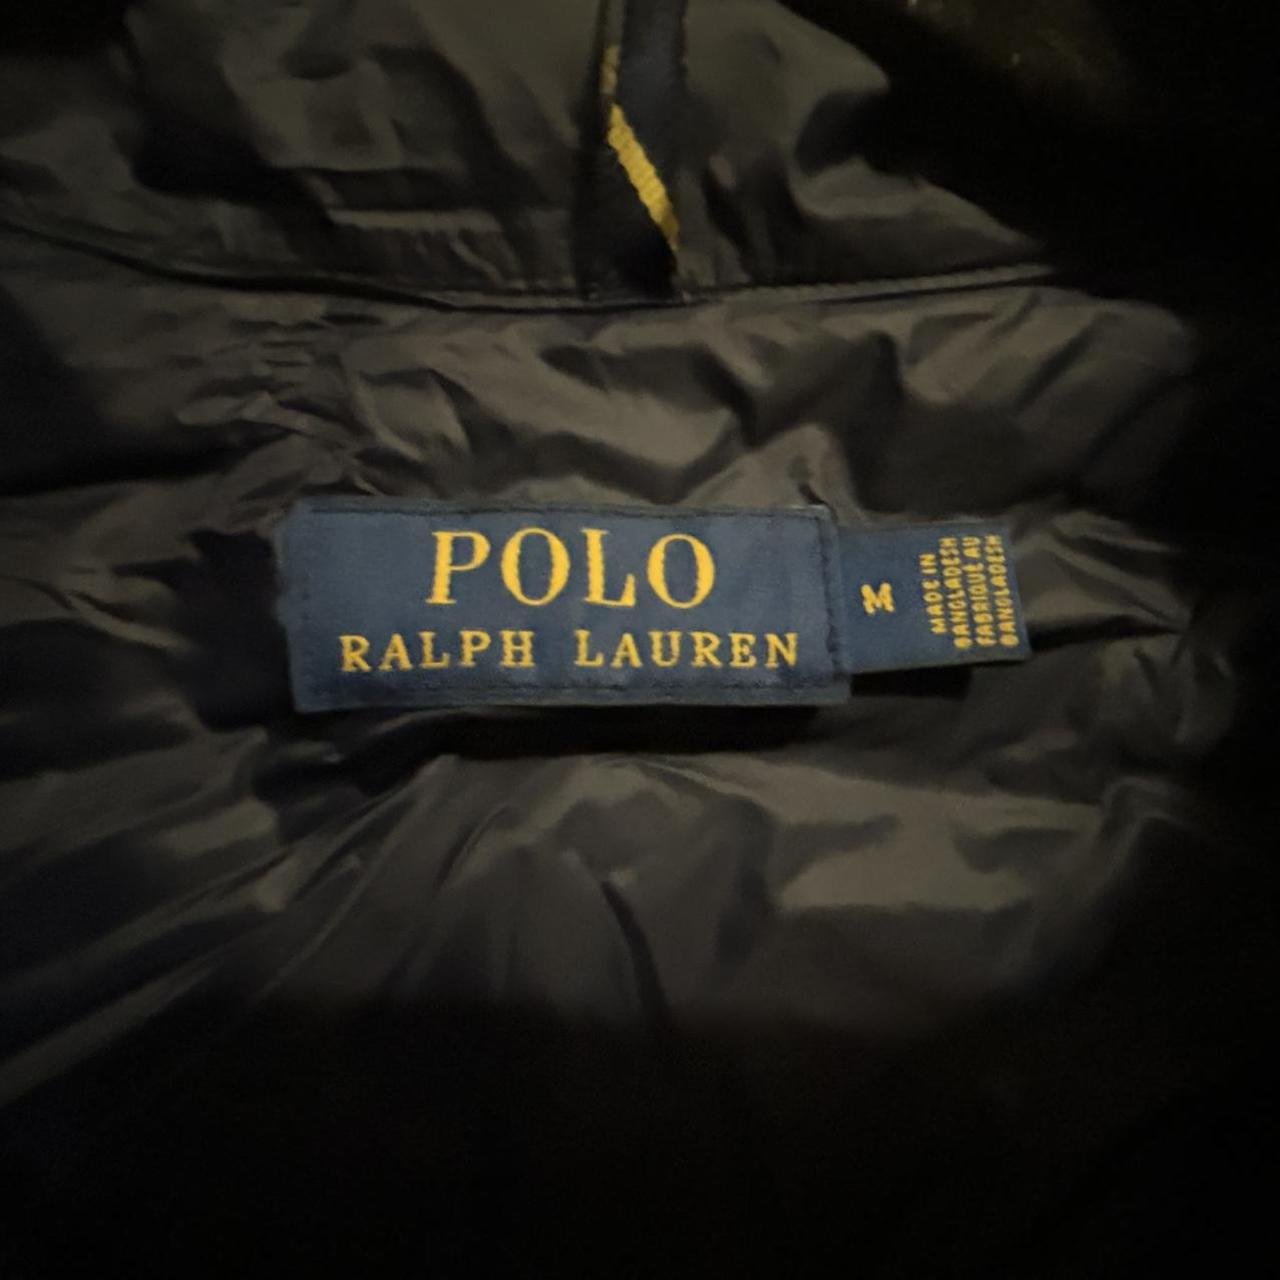 Polo Ralph Lauren puffer jacket zip up worn 3 times... - Depop